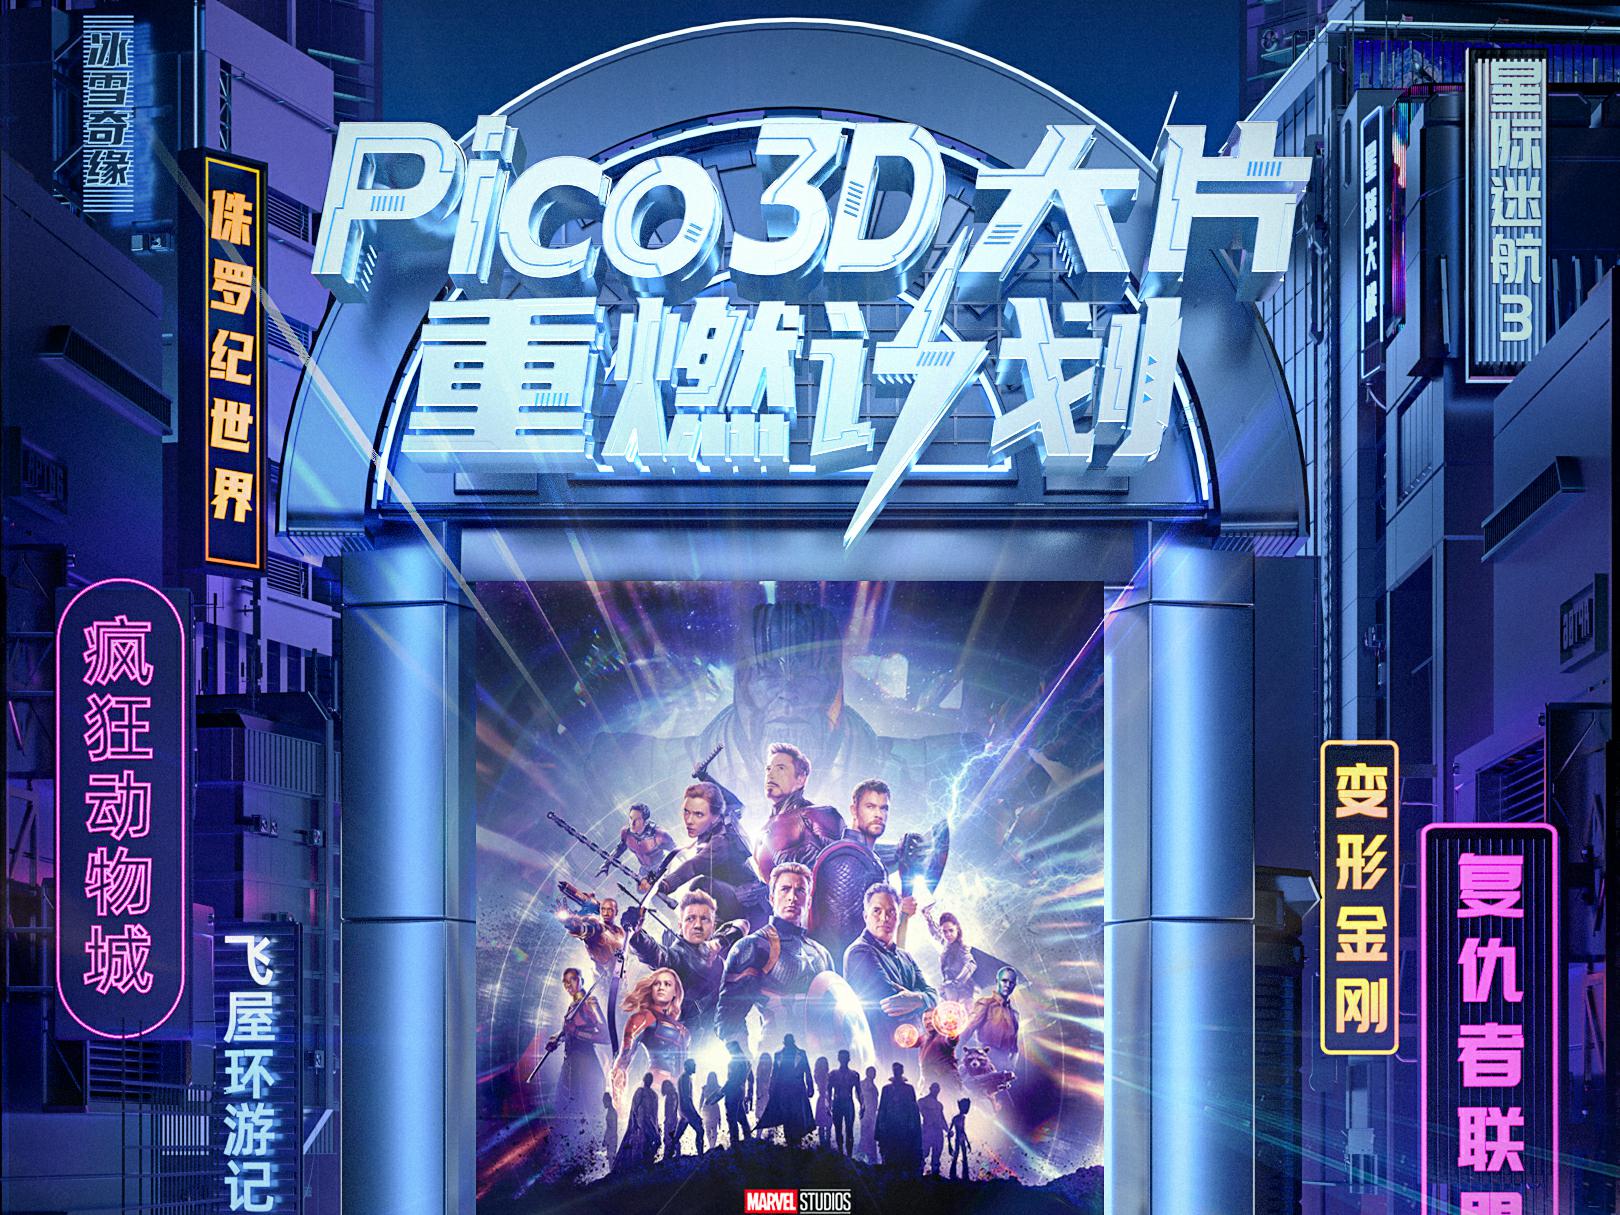 Pico 发布“3D大片重燃计划”，超百部经典影片上线Pico视频